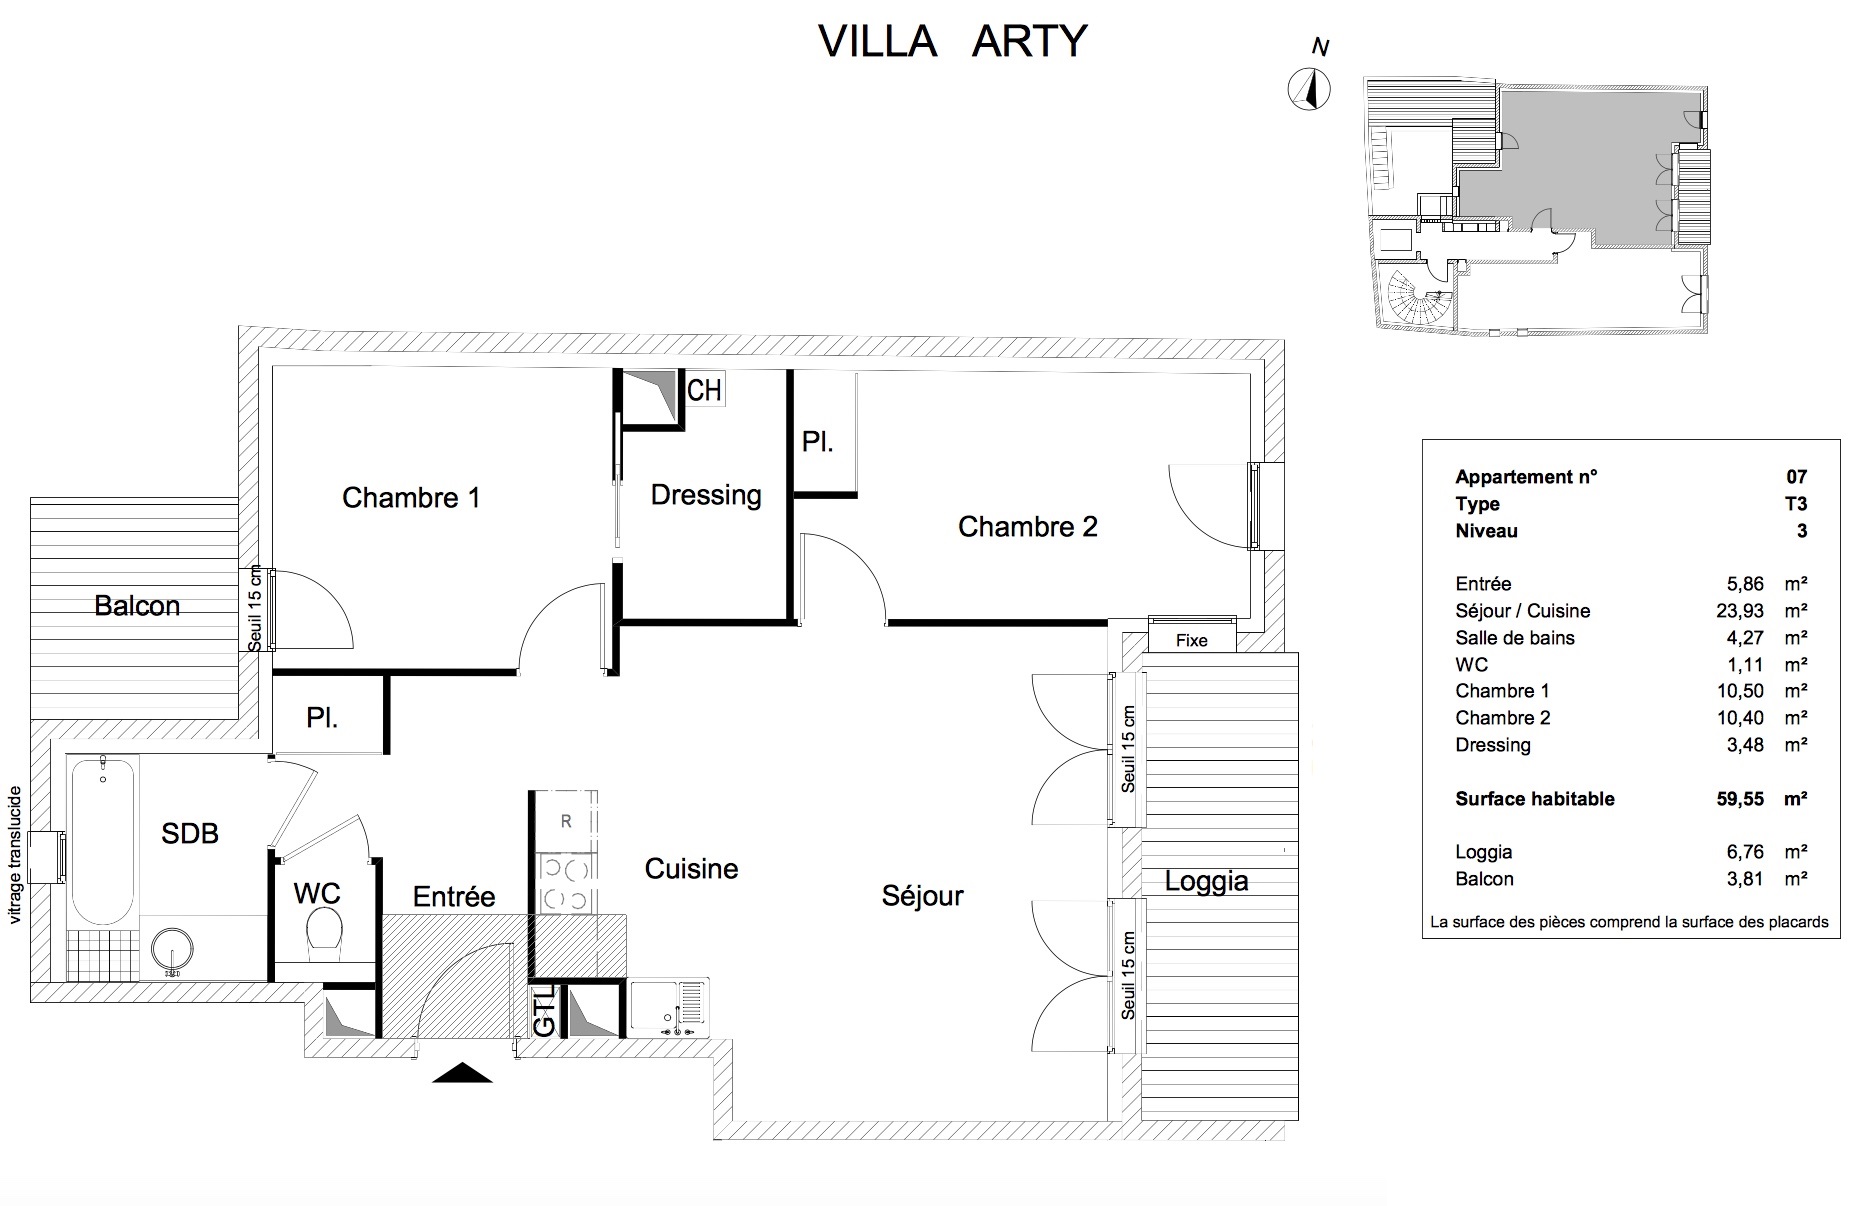 T3 - 59,55 m² - 3ème étage - Loggia 6,76 m² - Balcon 3,81 m² - Documentation - Nous contacter